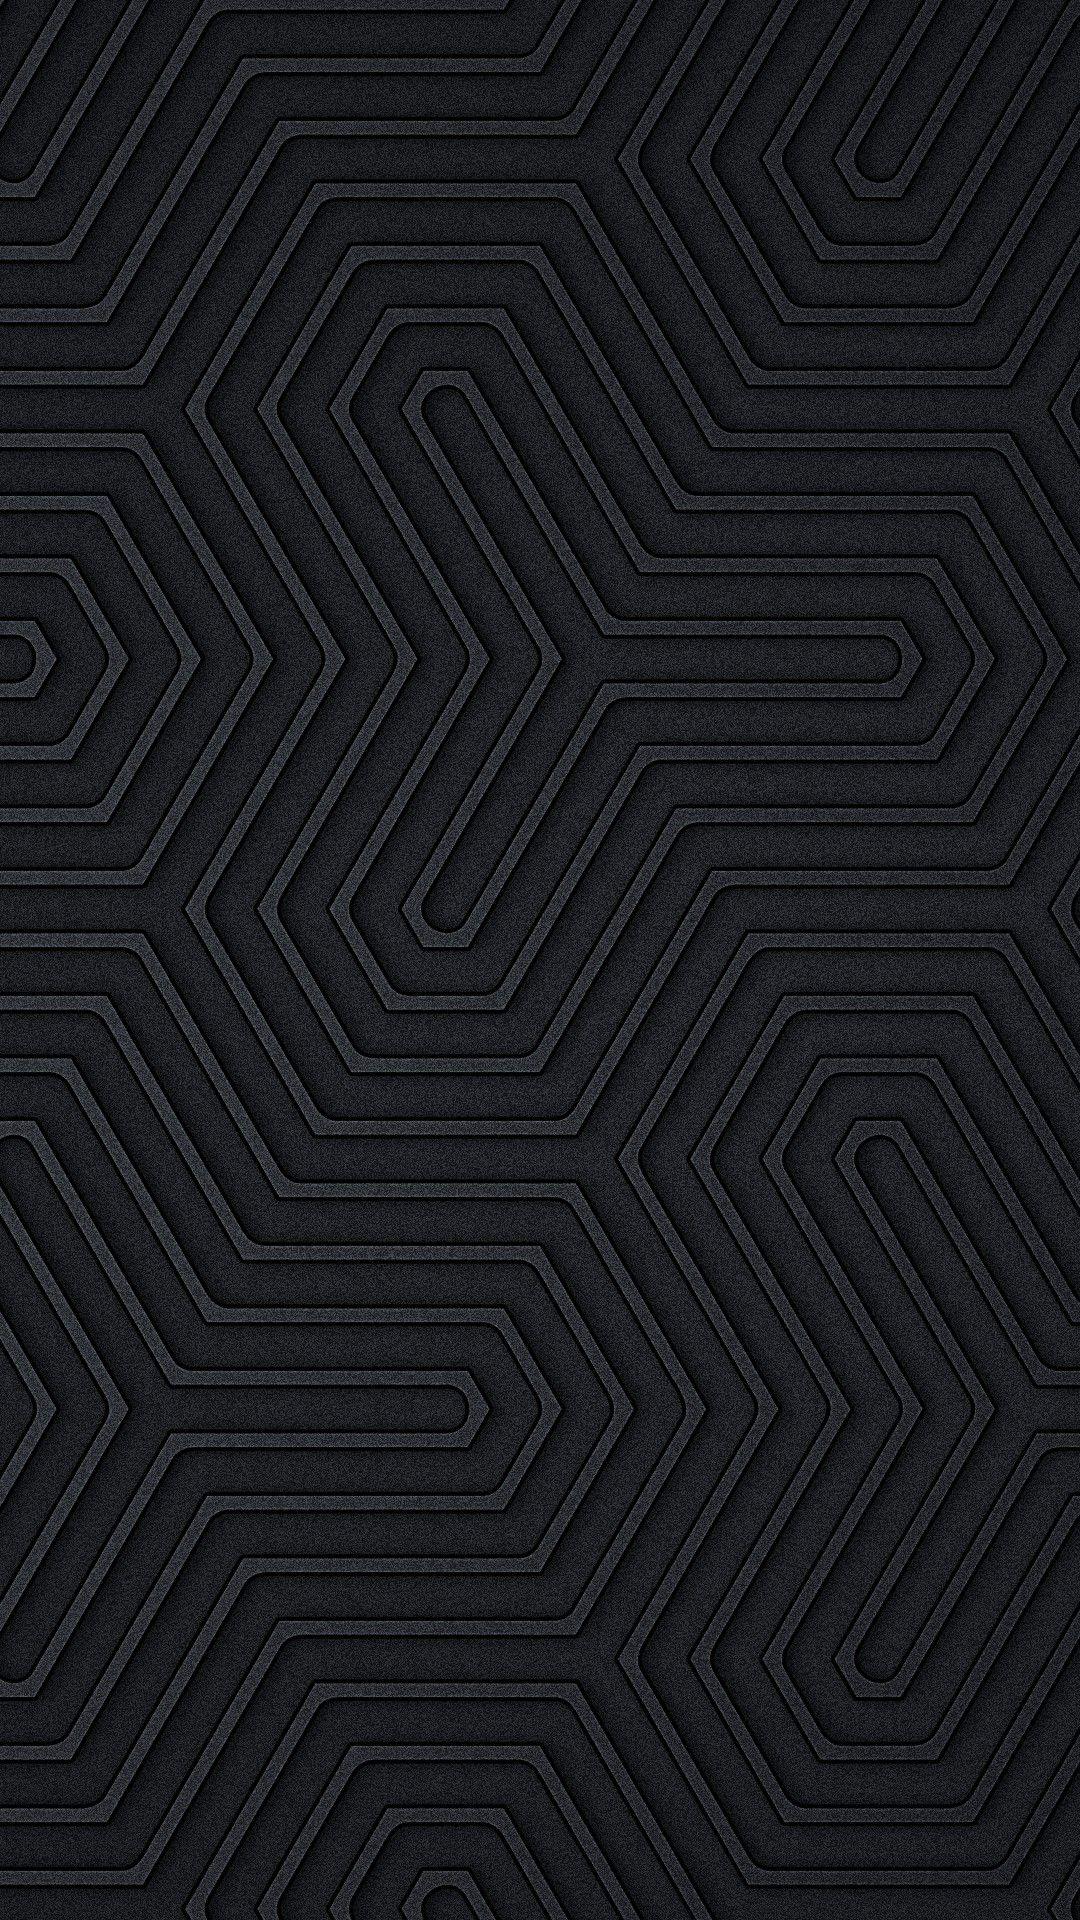 Black Design Wallpapers - Top Free Black Design Backgrounds ...